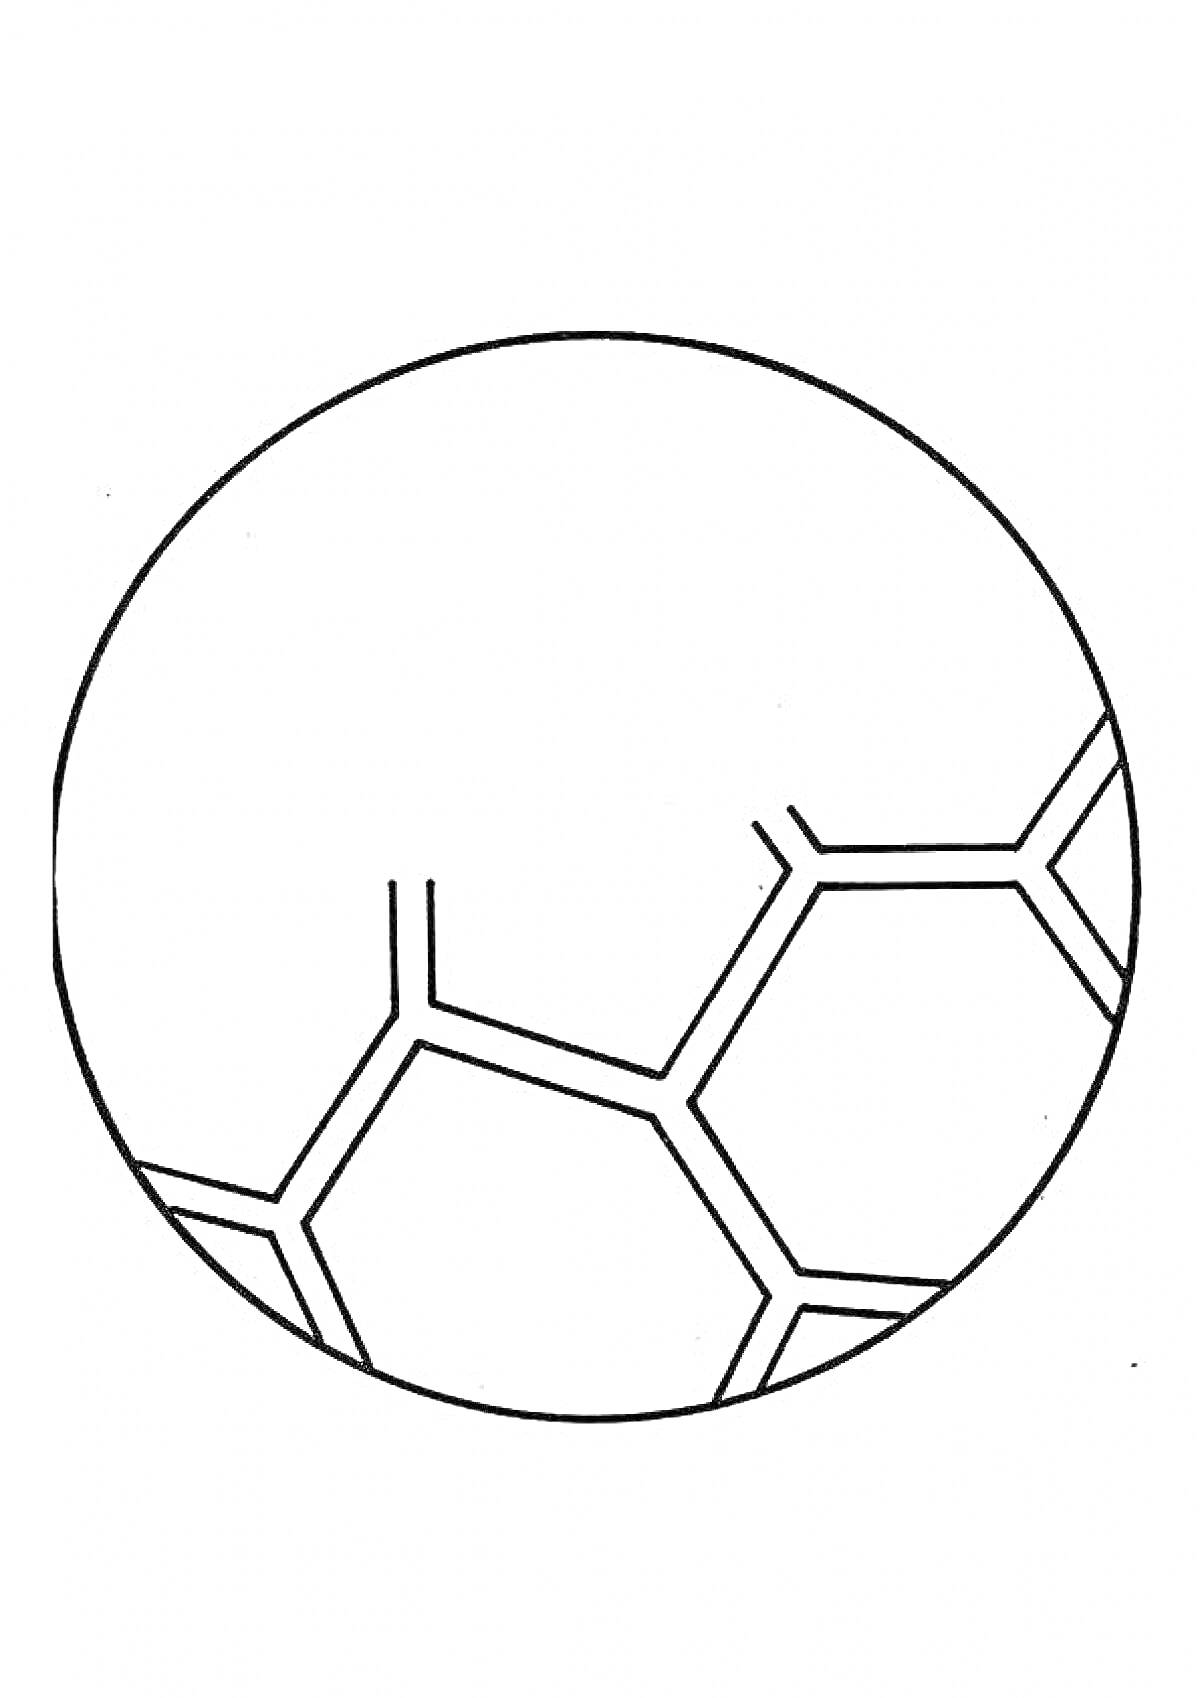 Раскраска футбольный мяч частично выполненный, рисунок футбольного мяча с черными многоугольными ячейками